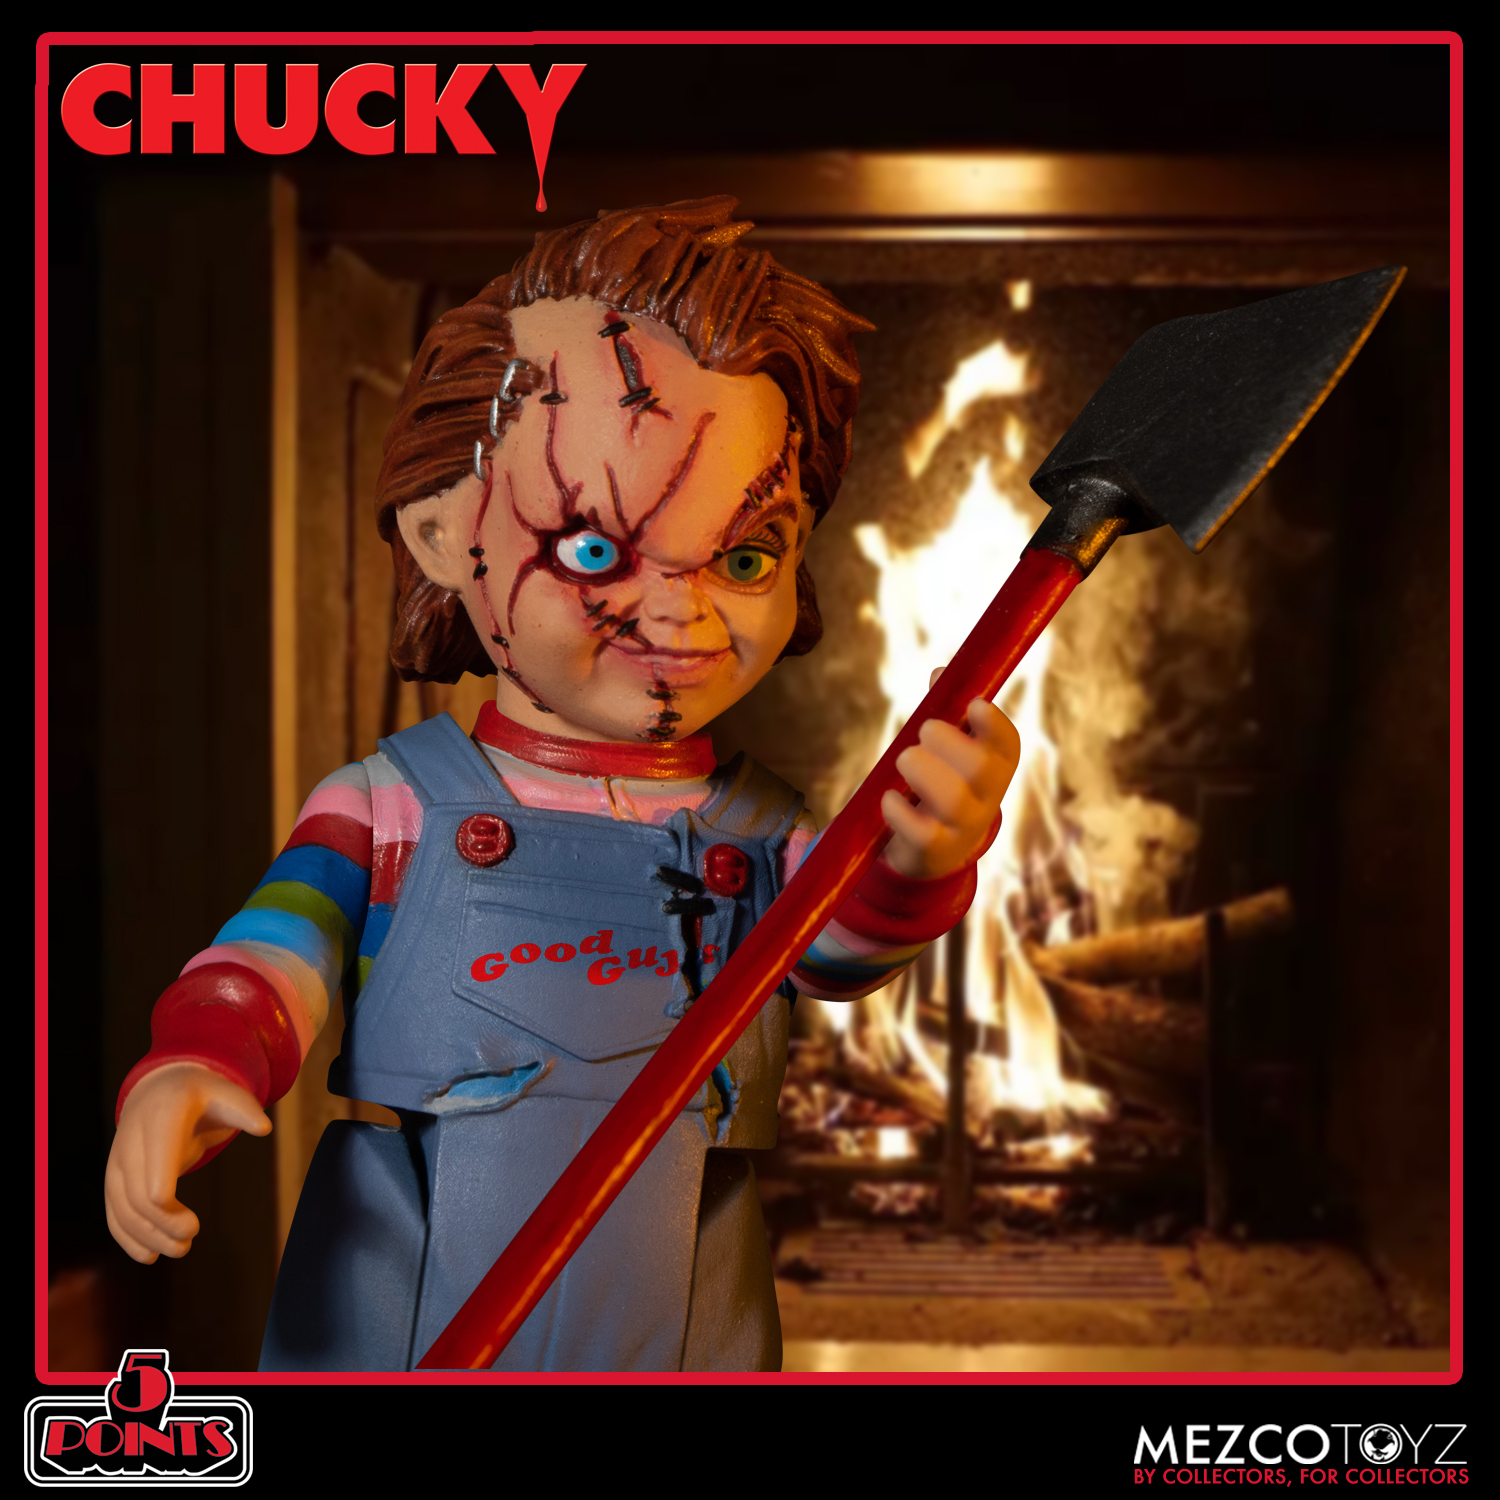 5 Points Chucky Deluxe Figure Set | Mezco Toyz